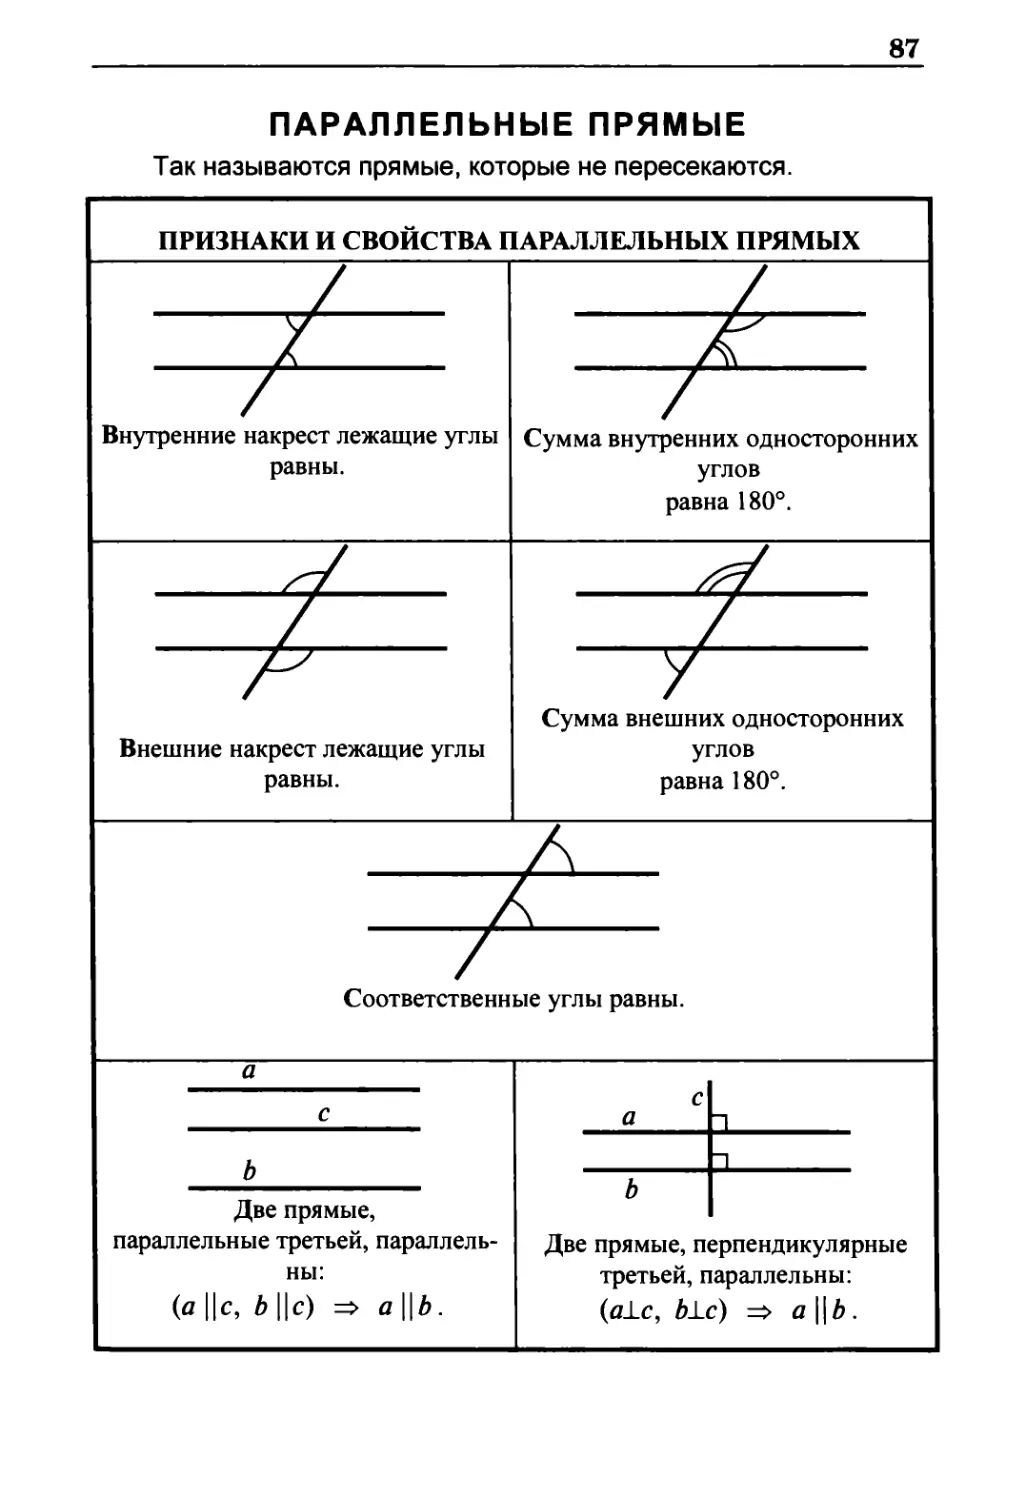 Параллельные прямые
Признаки и свойства параллельных прямых